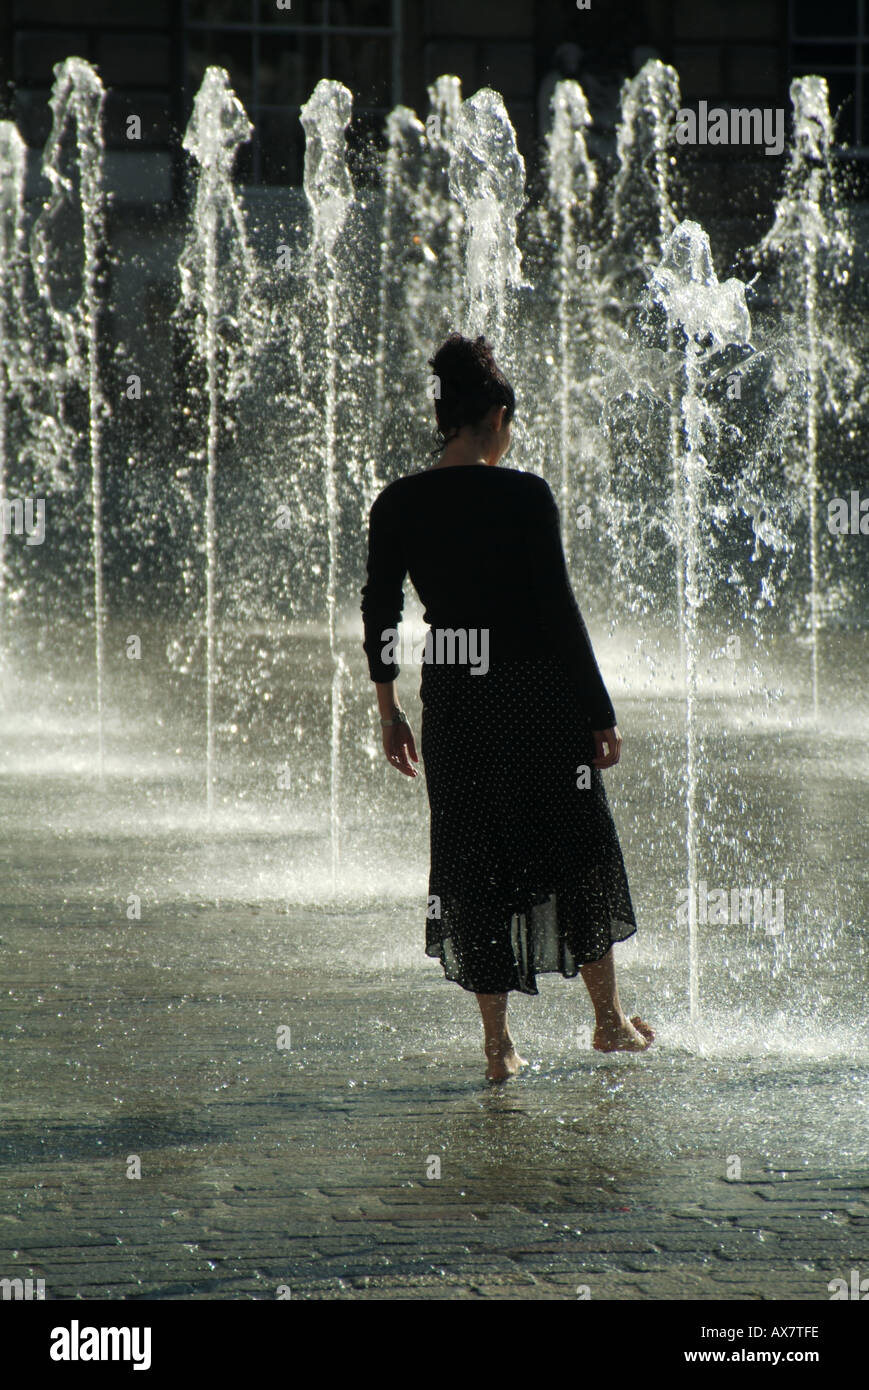 Sommer-Springbrunnen-Wasser-Spiel junge Frau kühlt sich von heißem Sommer-Wetter-Konzept testen das Wasser oder Tauchen Zehen im Wasser London England Großbritannien Stockfoto